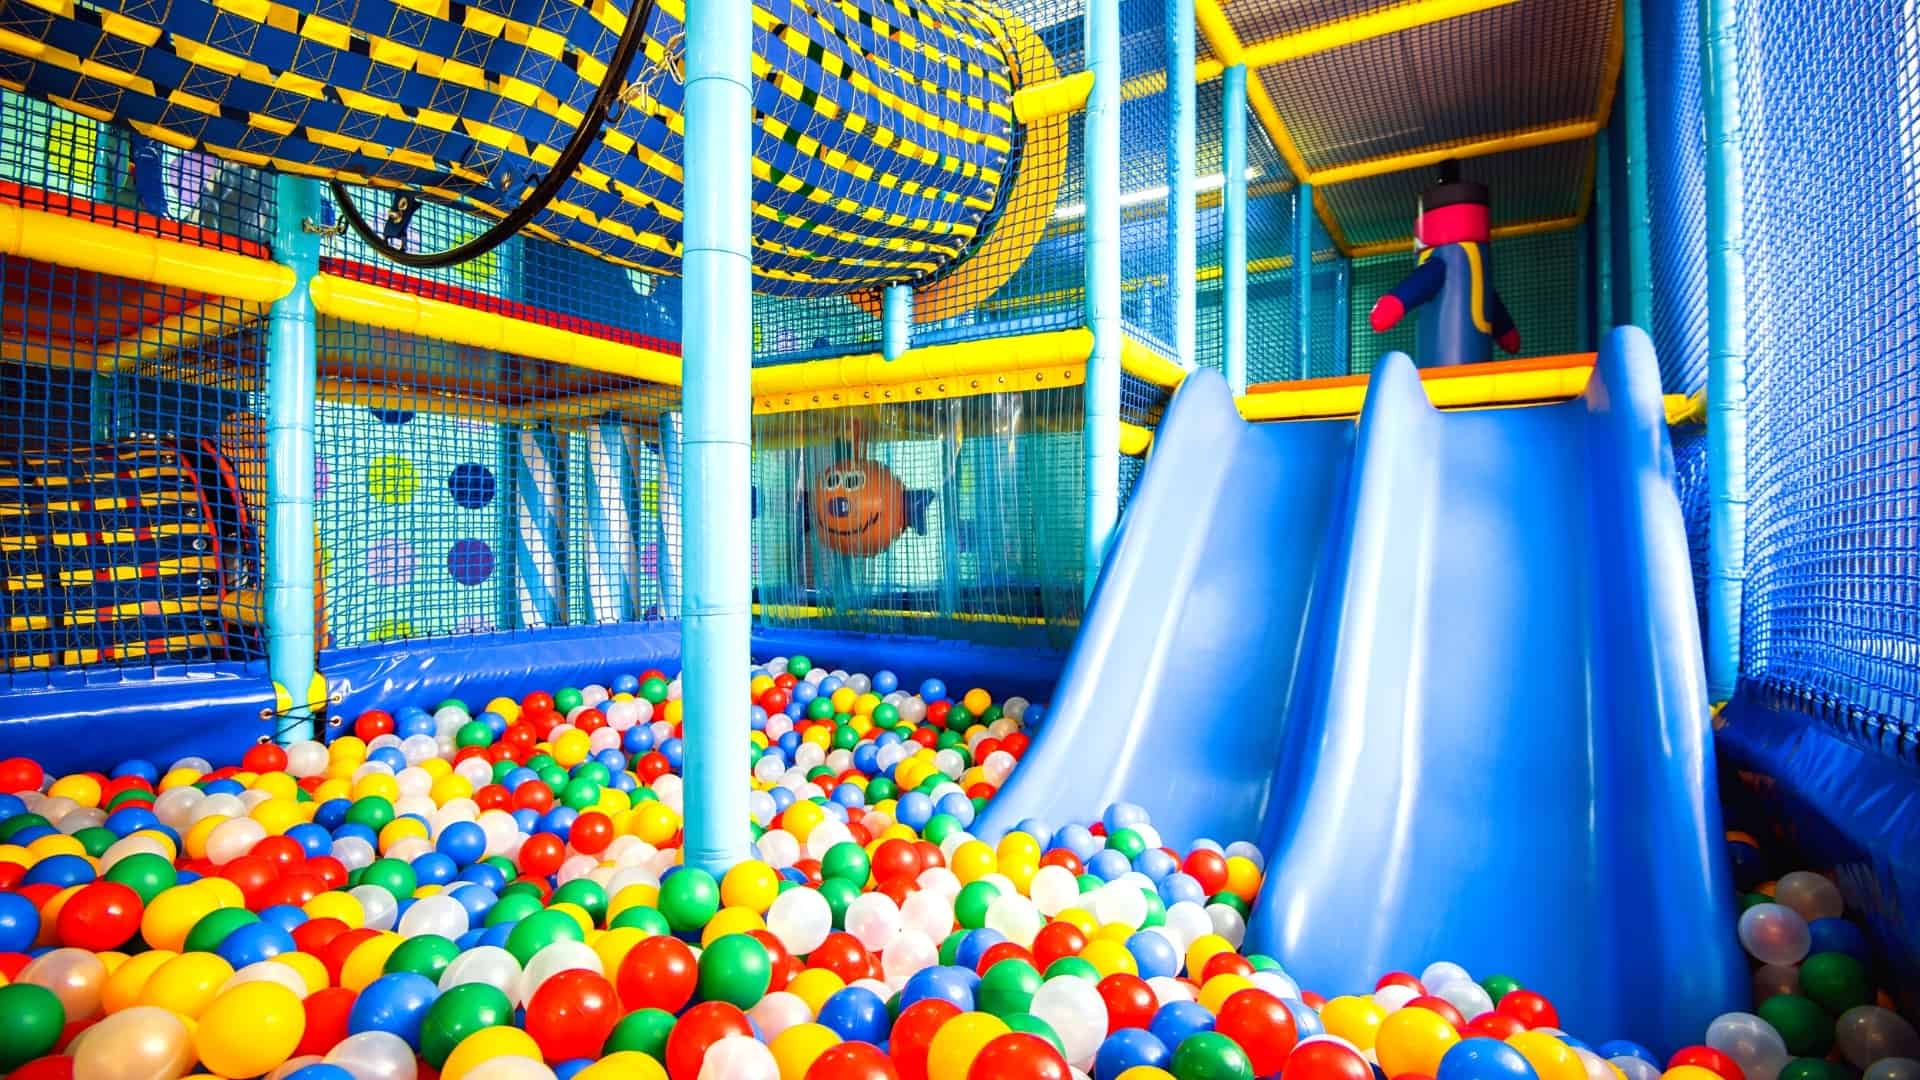 Best indoor playgrounds